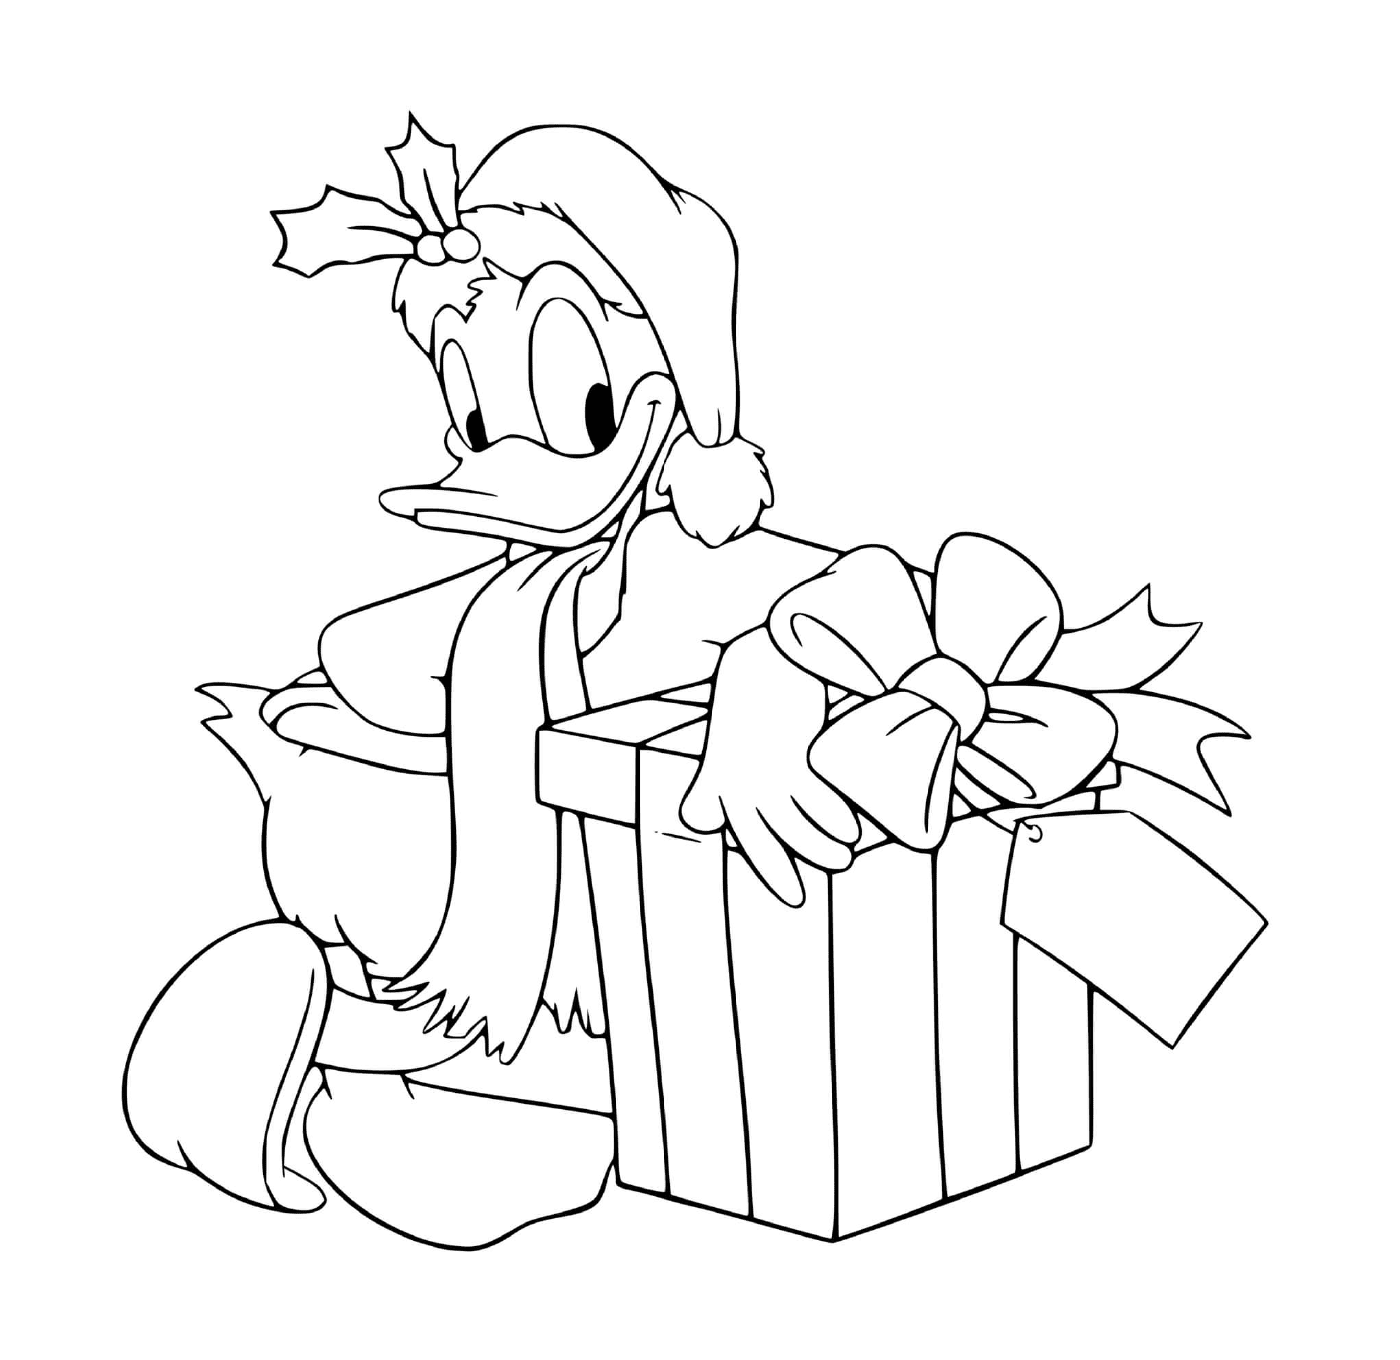  Donald neben einem Geschenk 